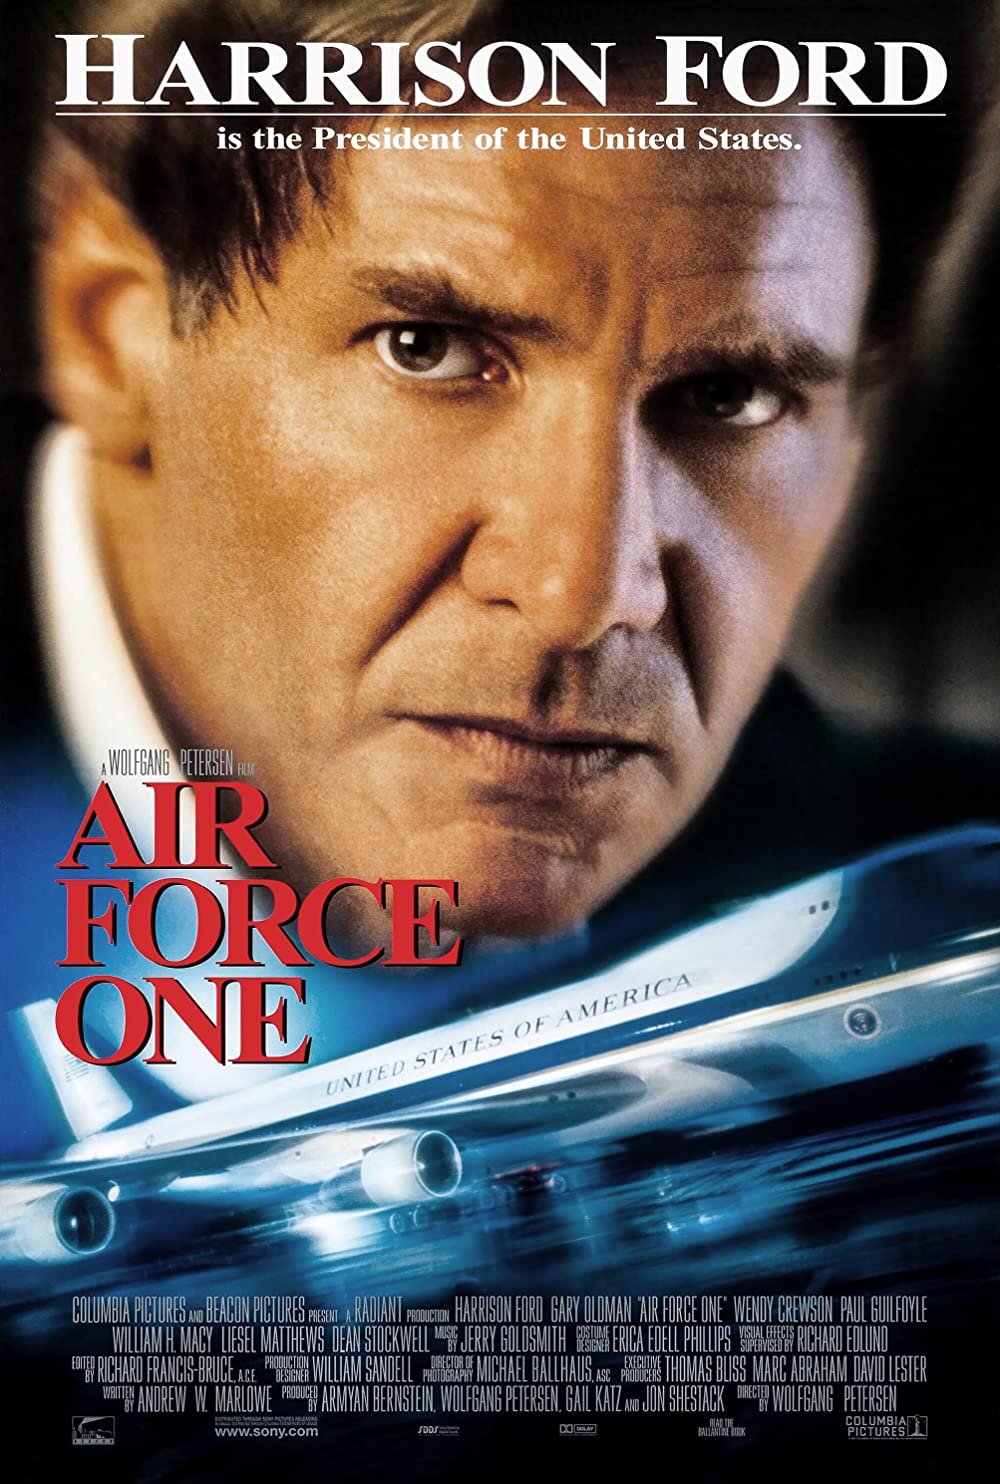 Filmbeschreibung zu Air Force One